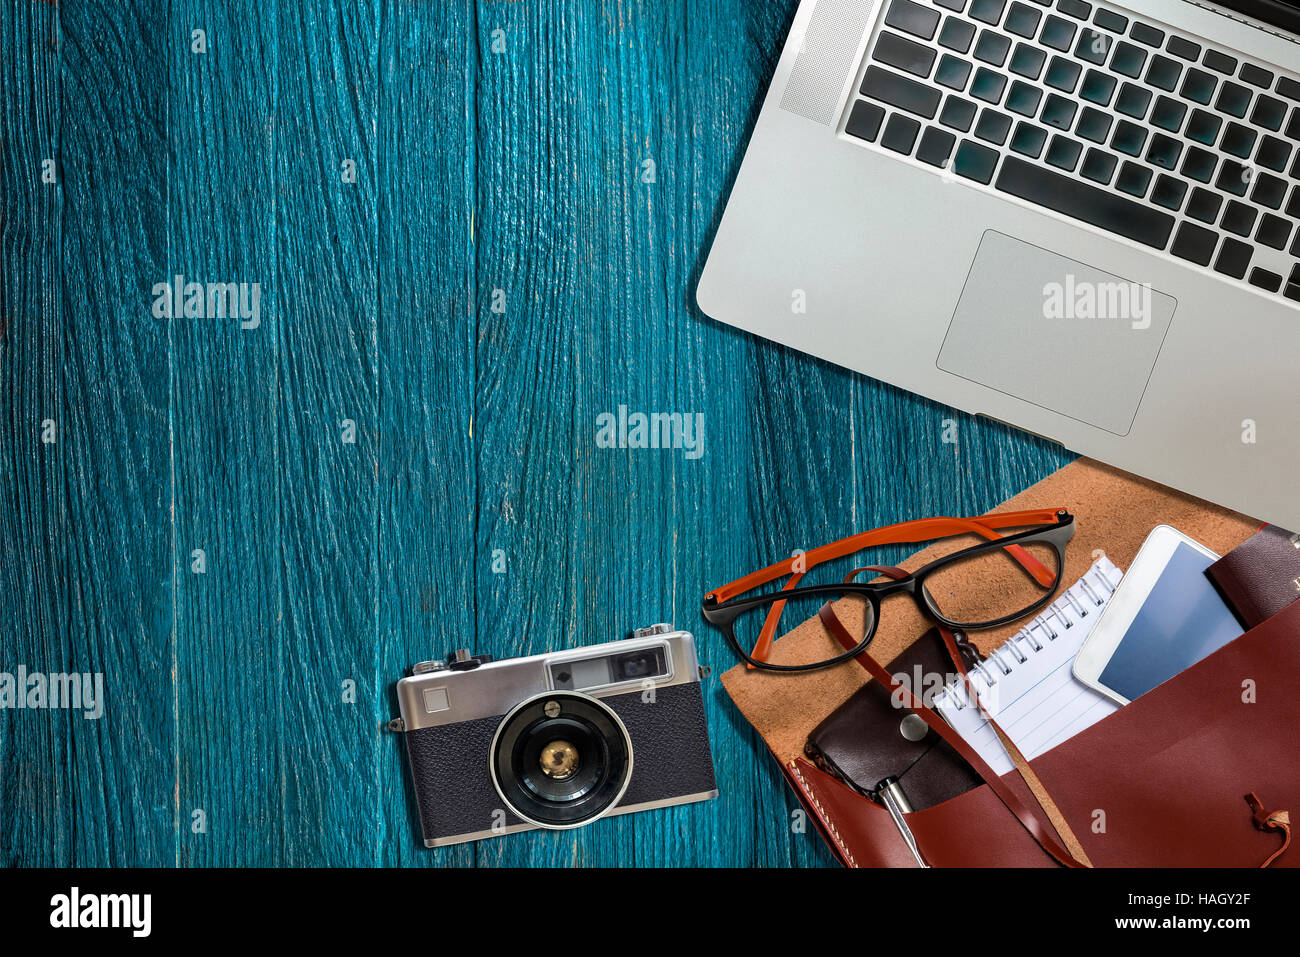 Schreibtisch Büro, Laptop, Kamera, Augen-Brillen, Telefon auf blauem Hintergrund aus Holz. Bereit für die Arbeit Stockfoto